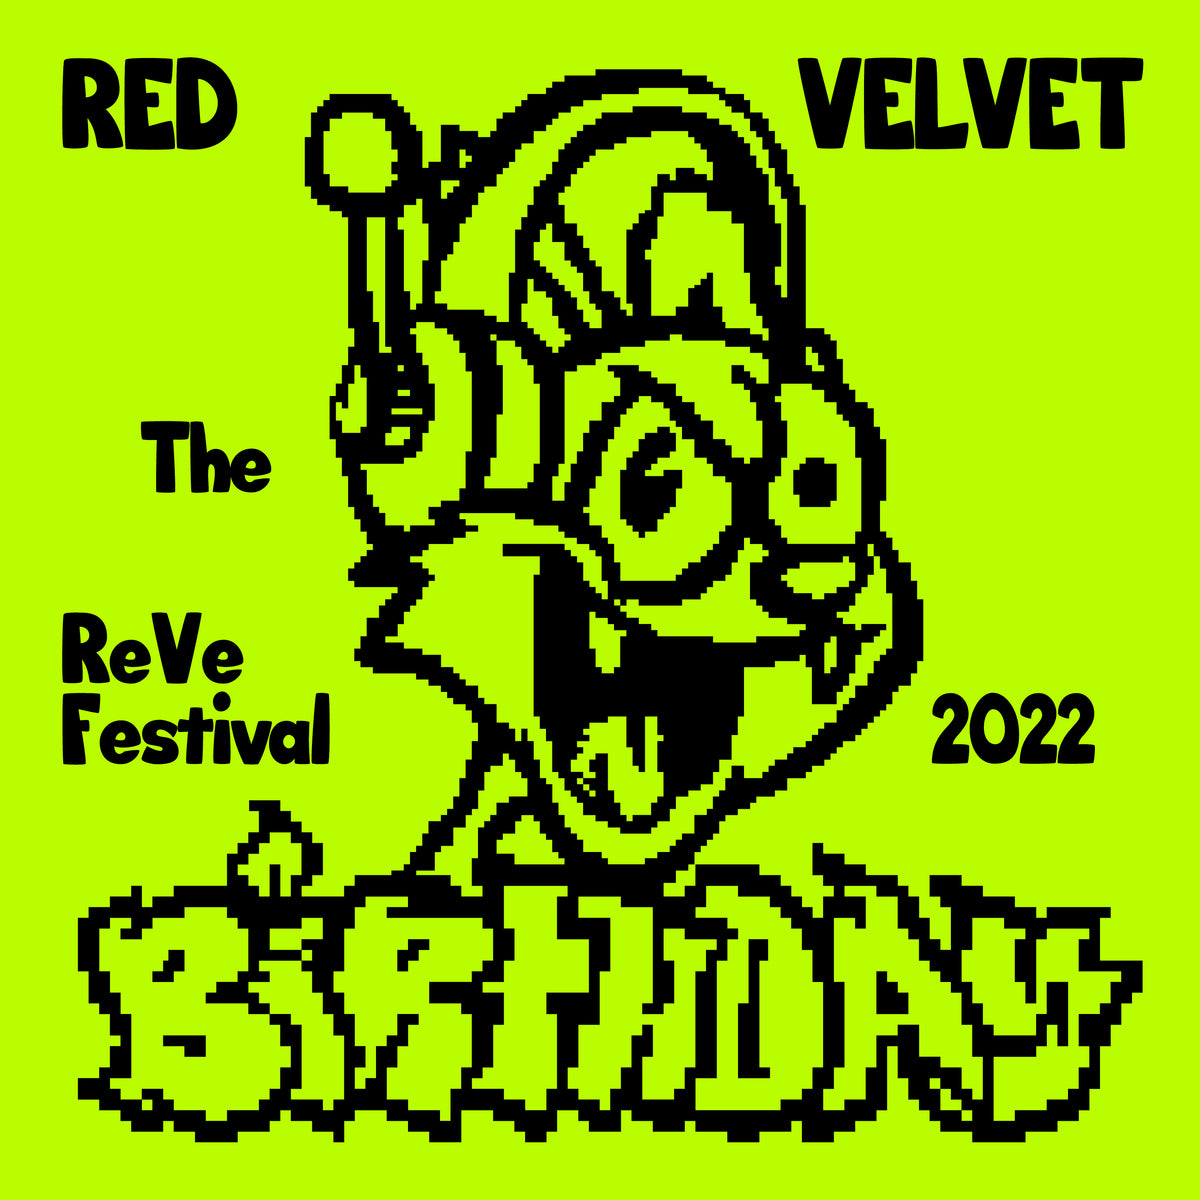 Red Velvet The ReVe Festival 2022 - Birthday (Limited Cake Ver.)